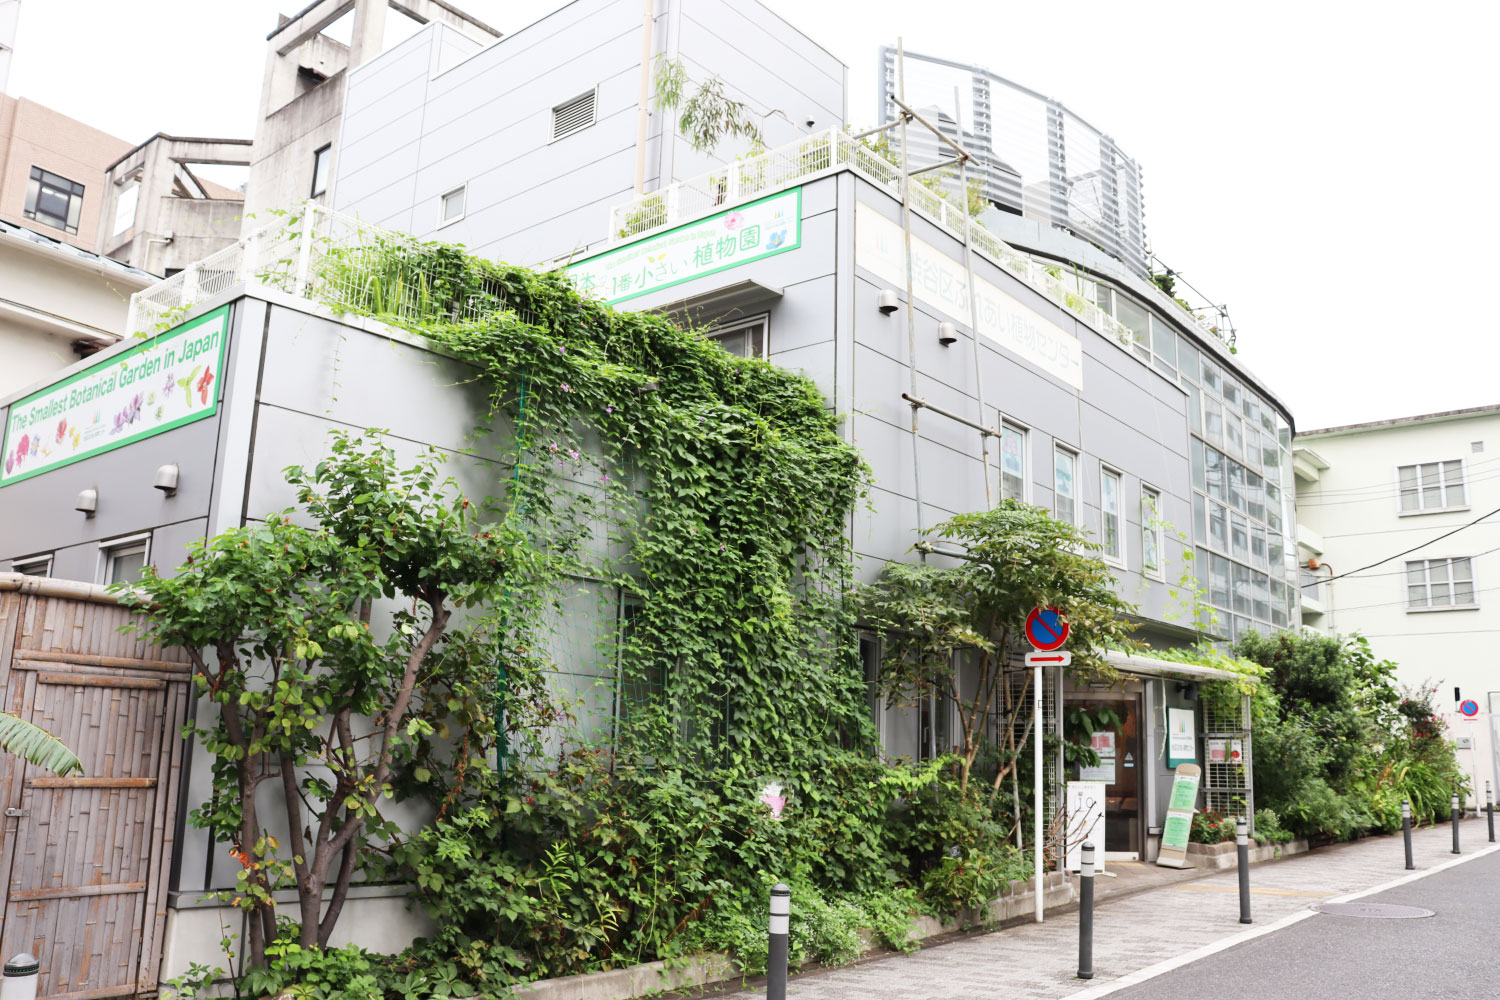 日本一小さな植物園 渋谷区ふれあい植物センター は地域のハブの役割も果たす 渋谷の庭 だった 路上園芸探訪 さんたつ By 散歩の達人